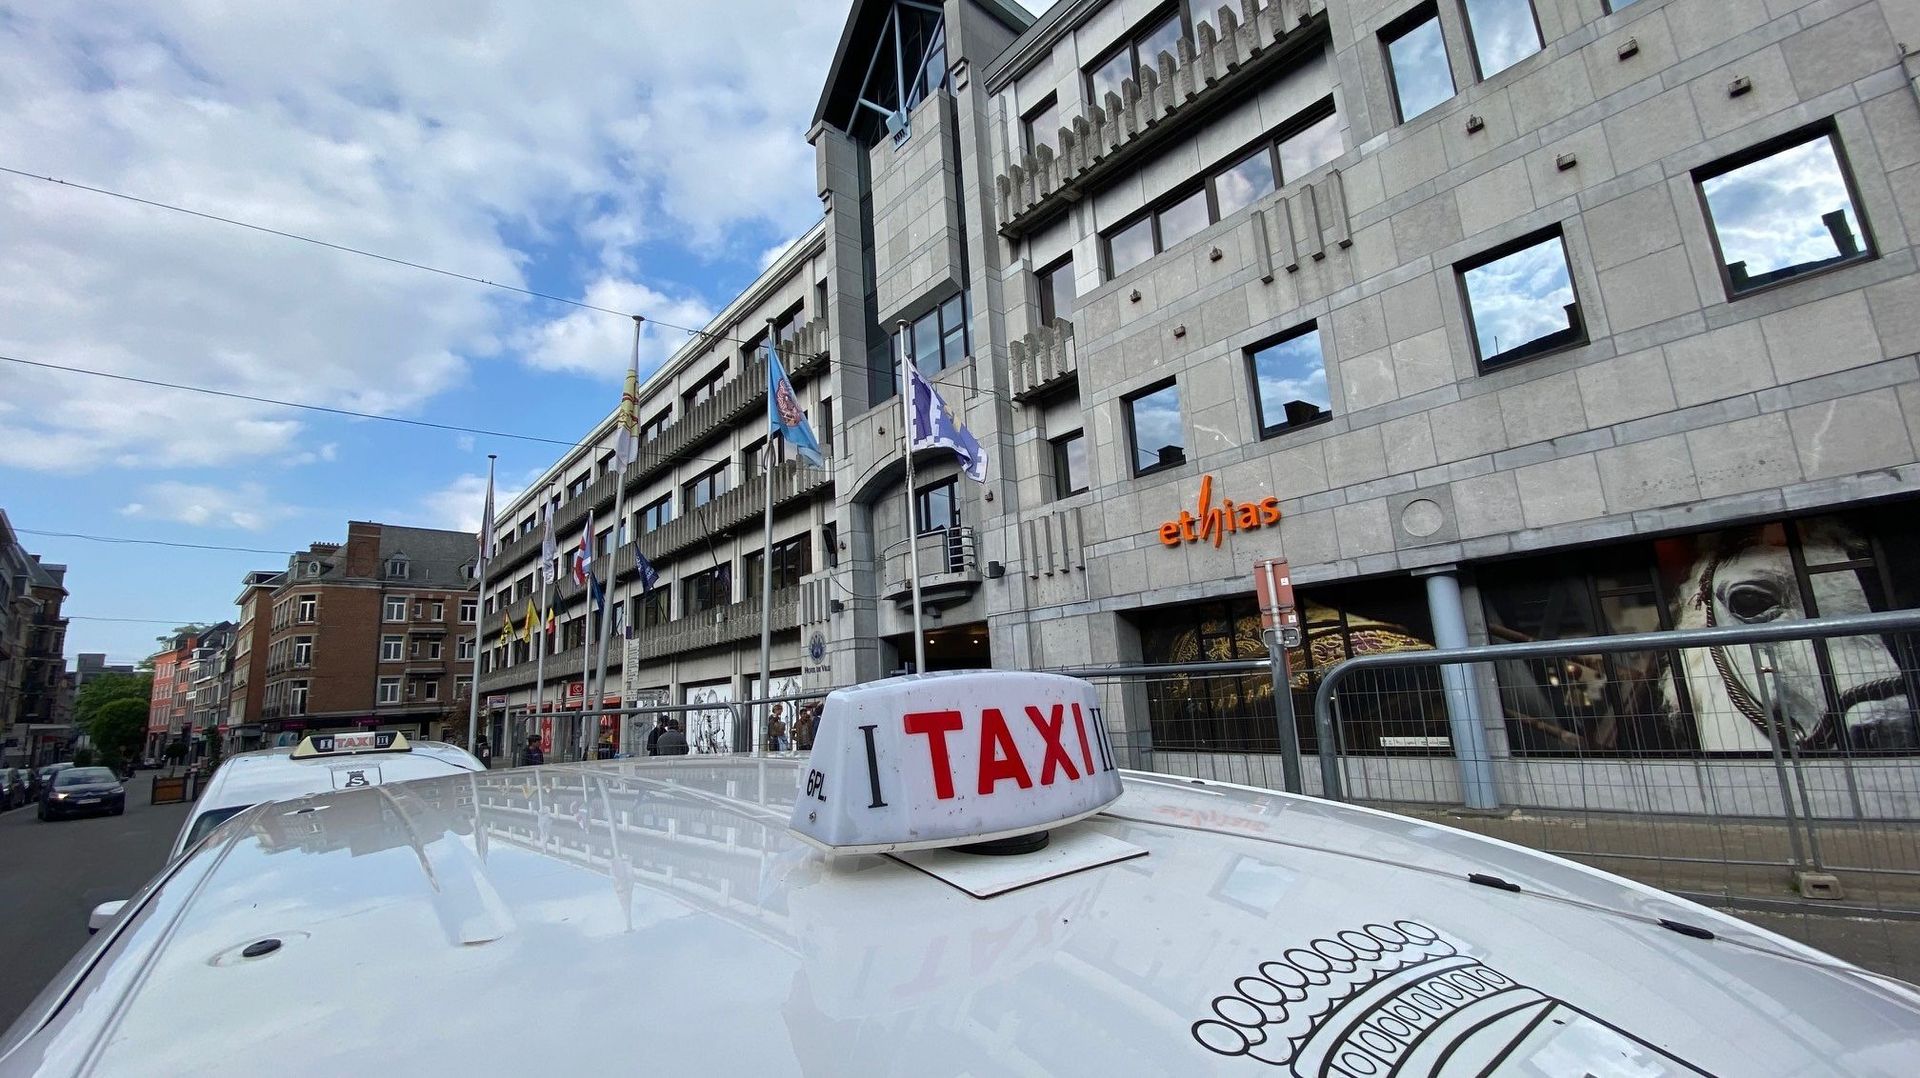 Les taximen namurois ne veulent pas des véhicules électriques